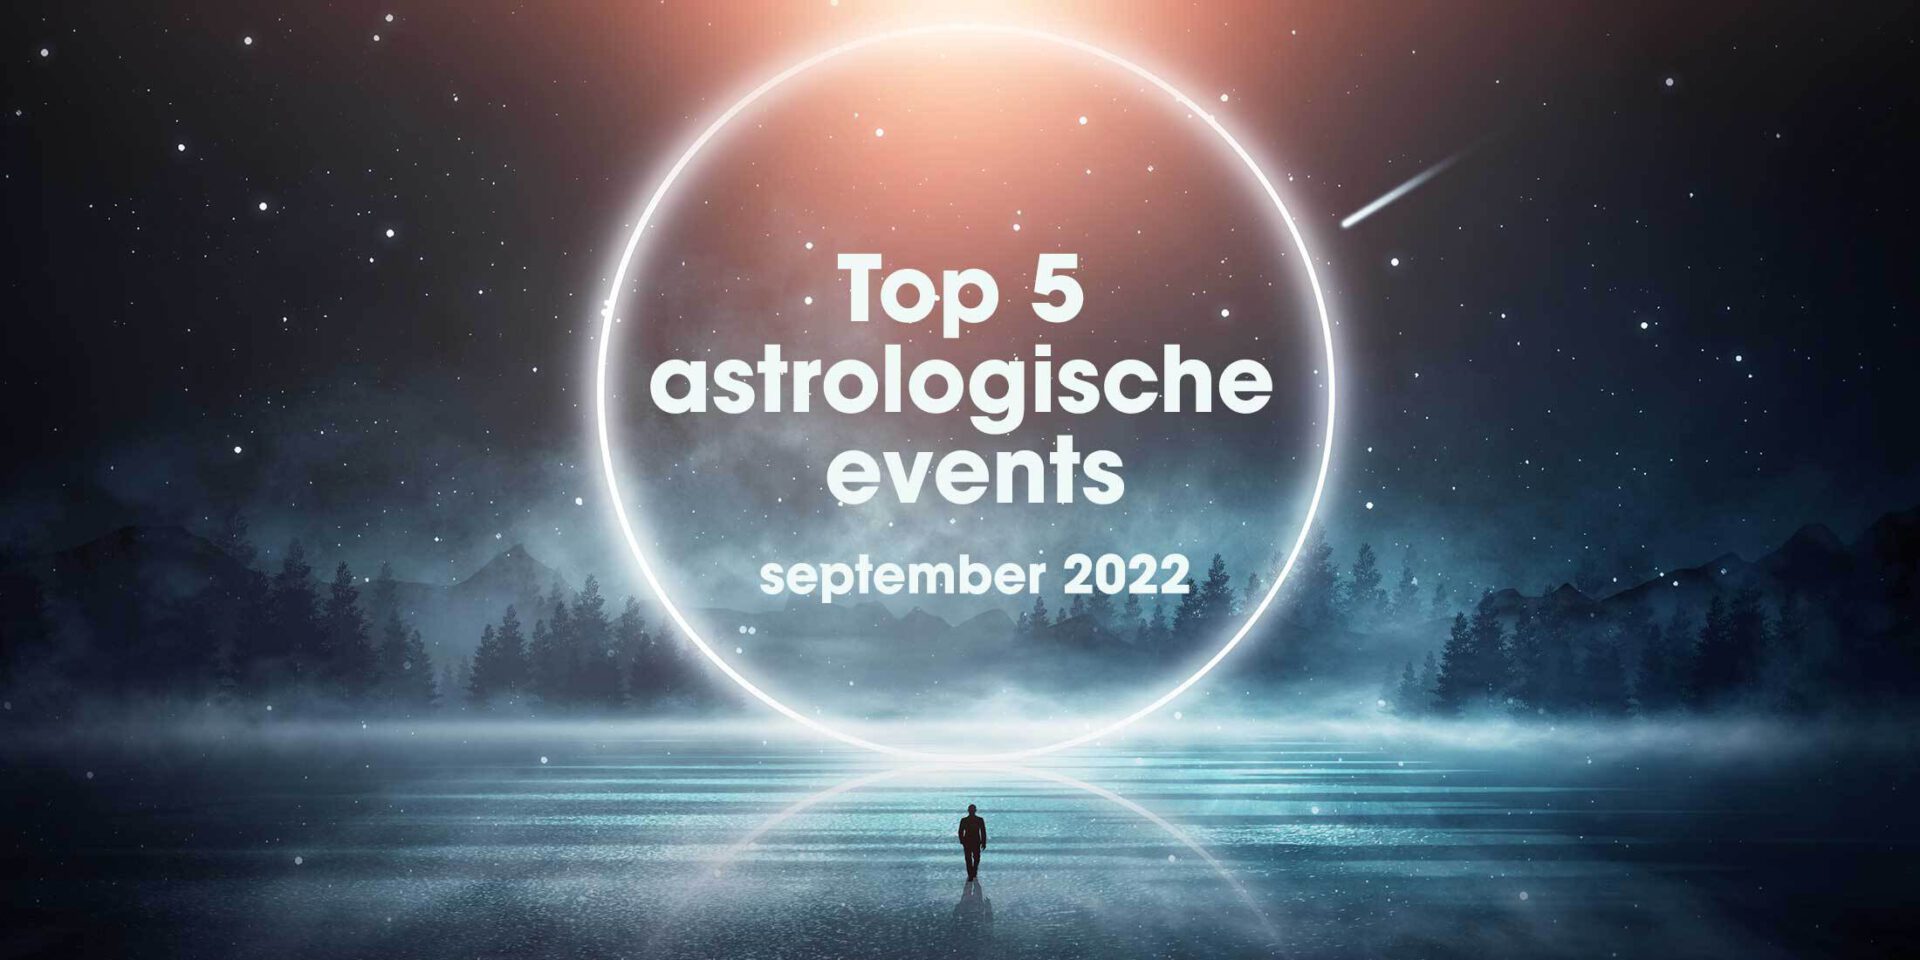 Top 5 astrologische transits en events in september 2022